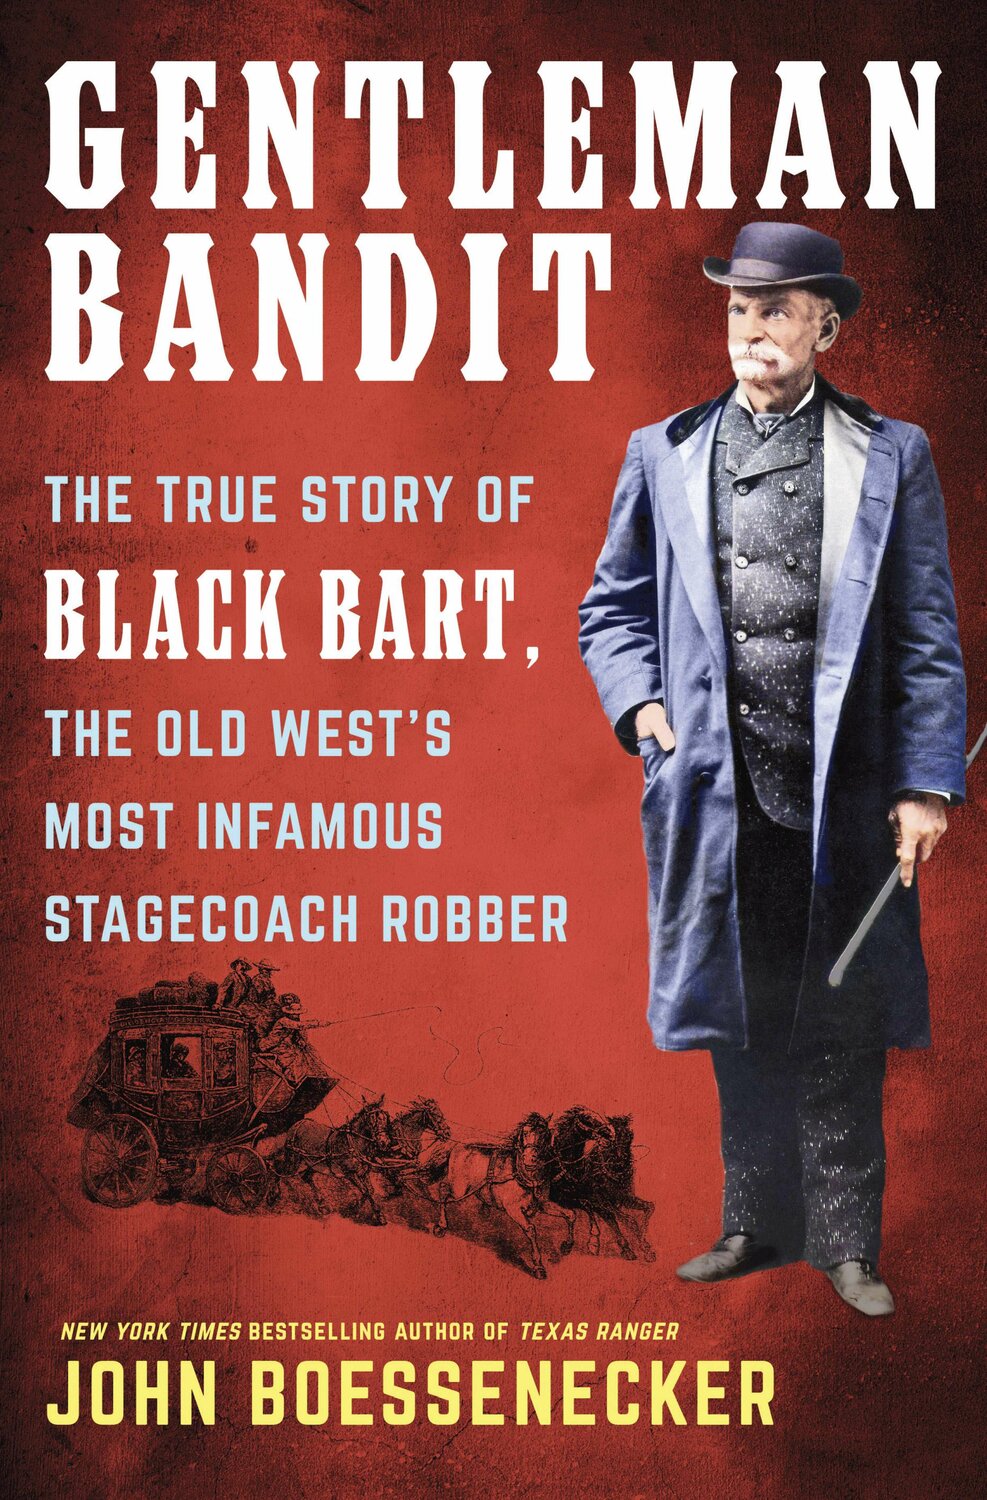 "Gentleman Bandit"